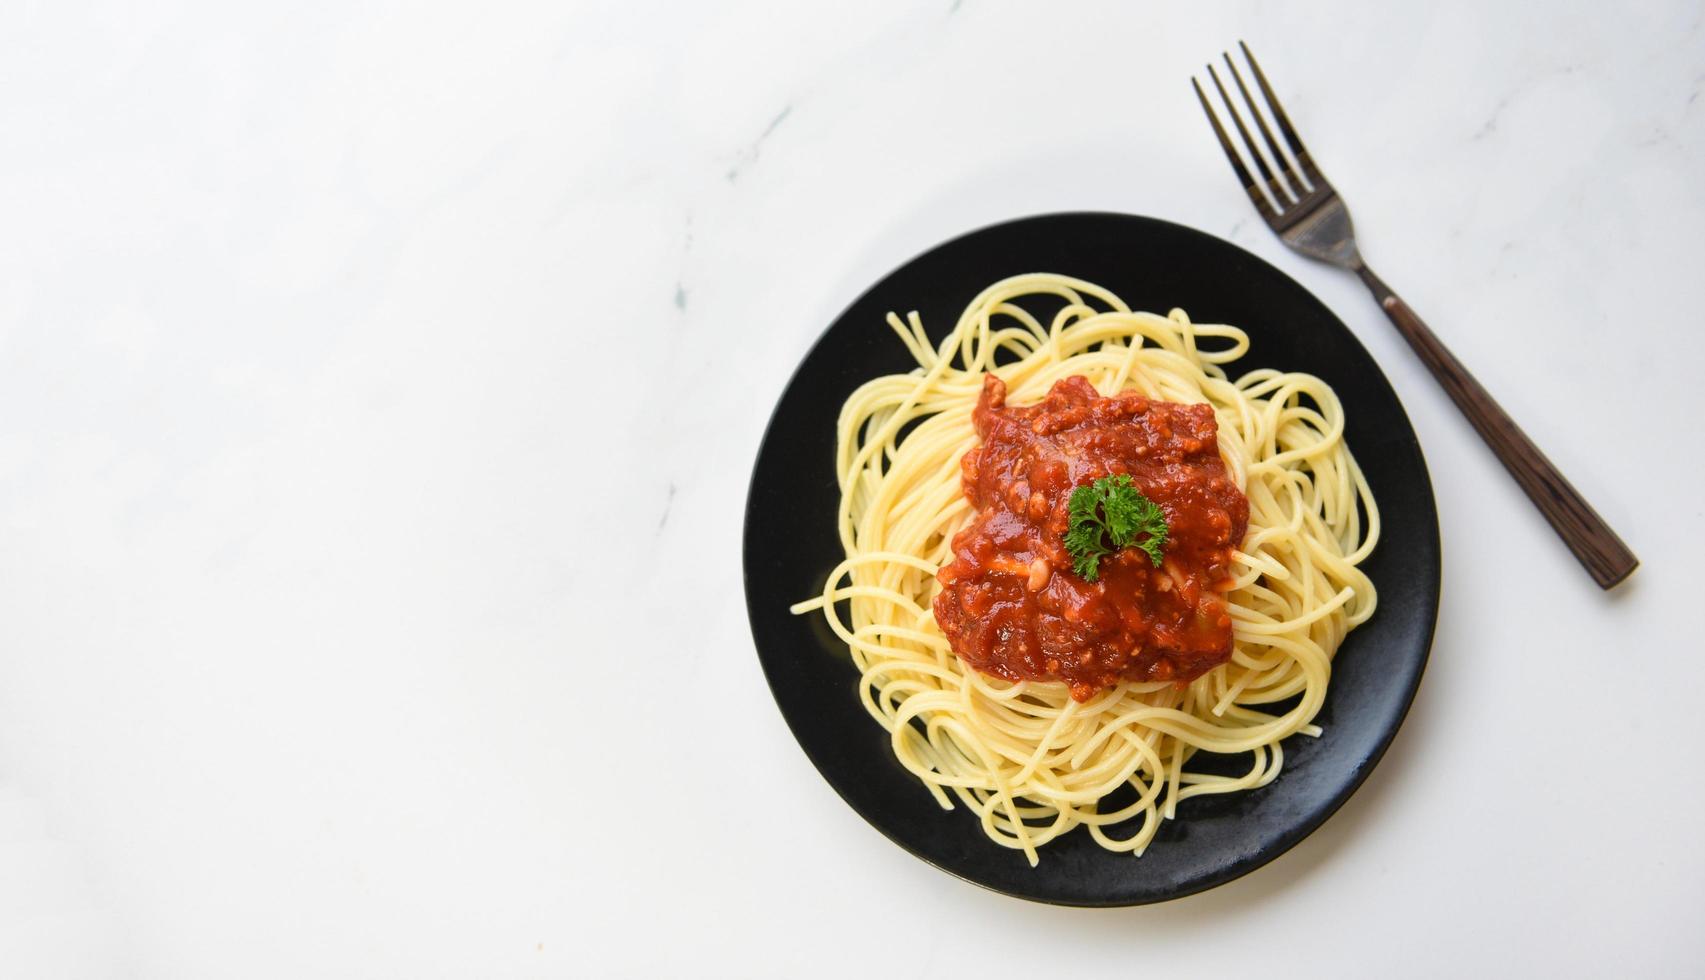 spaghetti bolognese , topp se - spaghetti italiensk pasta eras på svart tallrik med tomat sås och persilja i de restaurang italiensk mat och meny begrepp foto